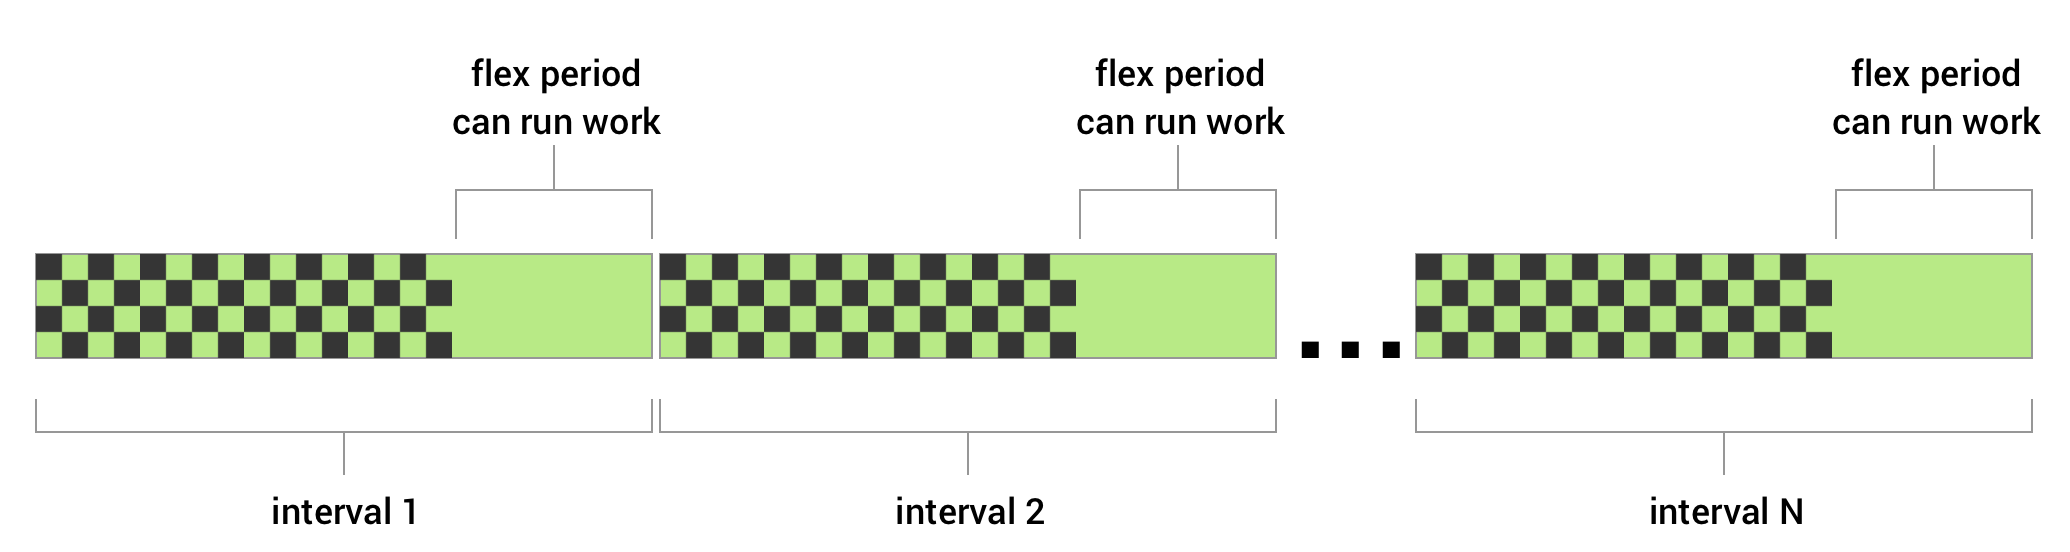 Anda dapat menyetel interval fleksibel untuk tugas berkala. Anda menentukan interval pengulangan,
dan interval fleksibel yang menentukan jumlah waktu tertentu di akhir
interval pengulangan. WorkManager mencoba menjalankan pekerjaan Anda pada waktu tertentu selama
interval fleksibel pada setiap siklus.